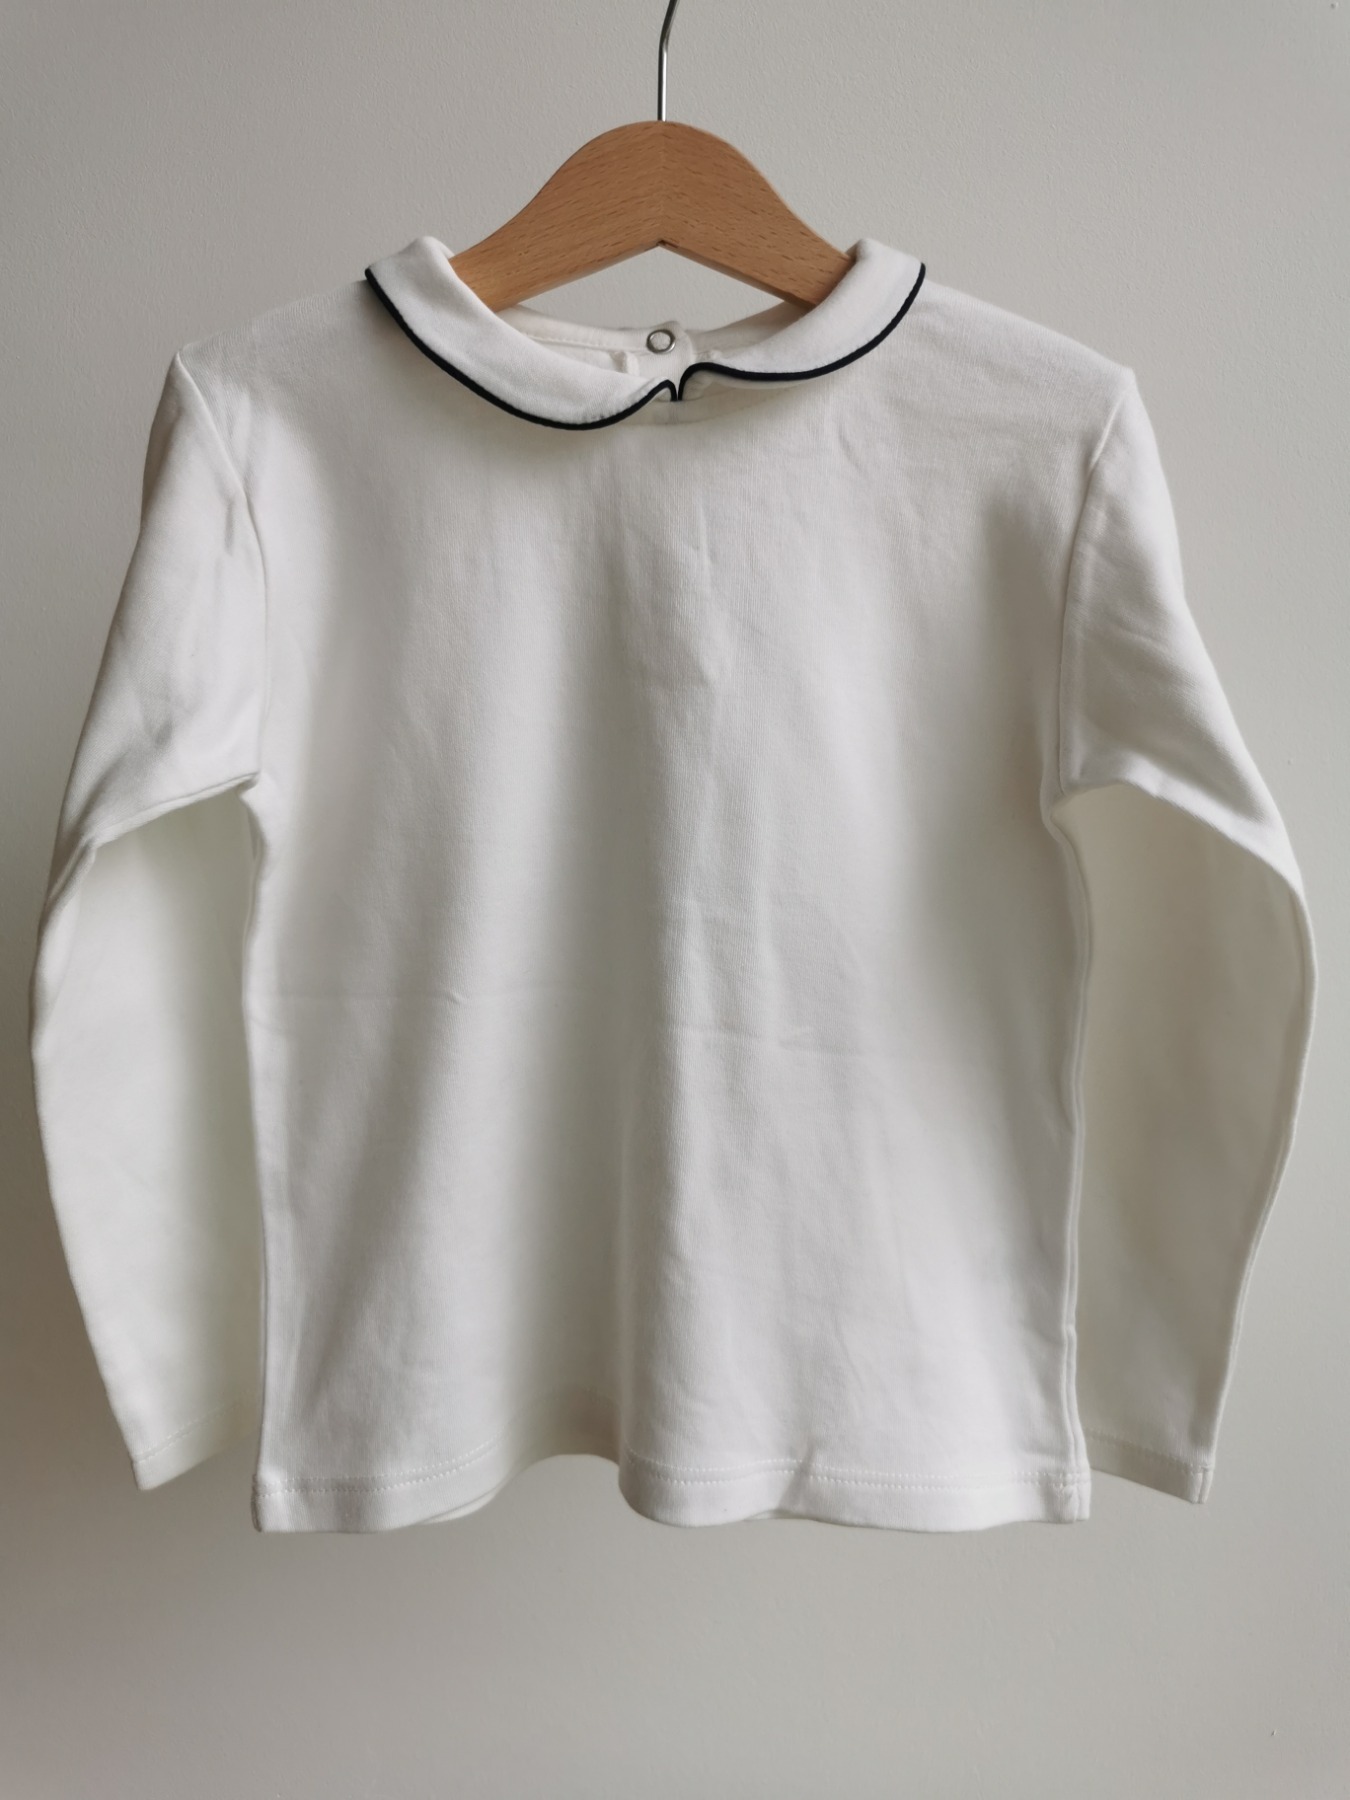 Kragen-Shirt - Größe 116